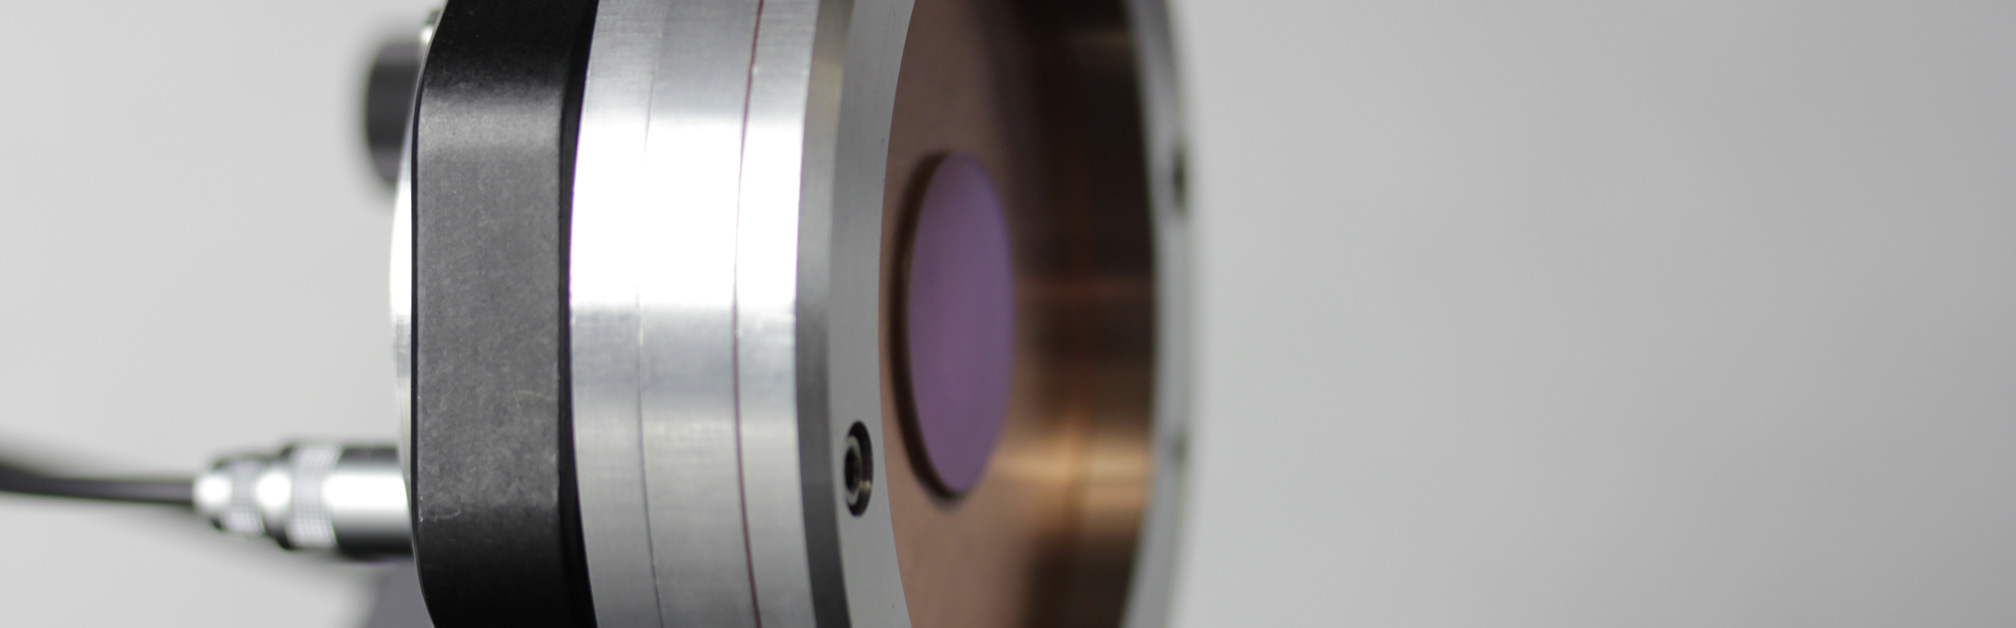 Dynamischer Fokusspiegel sorgt für eine Zeitersparnis beim Lasermaterialbearbeitungsprozess.